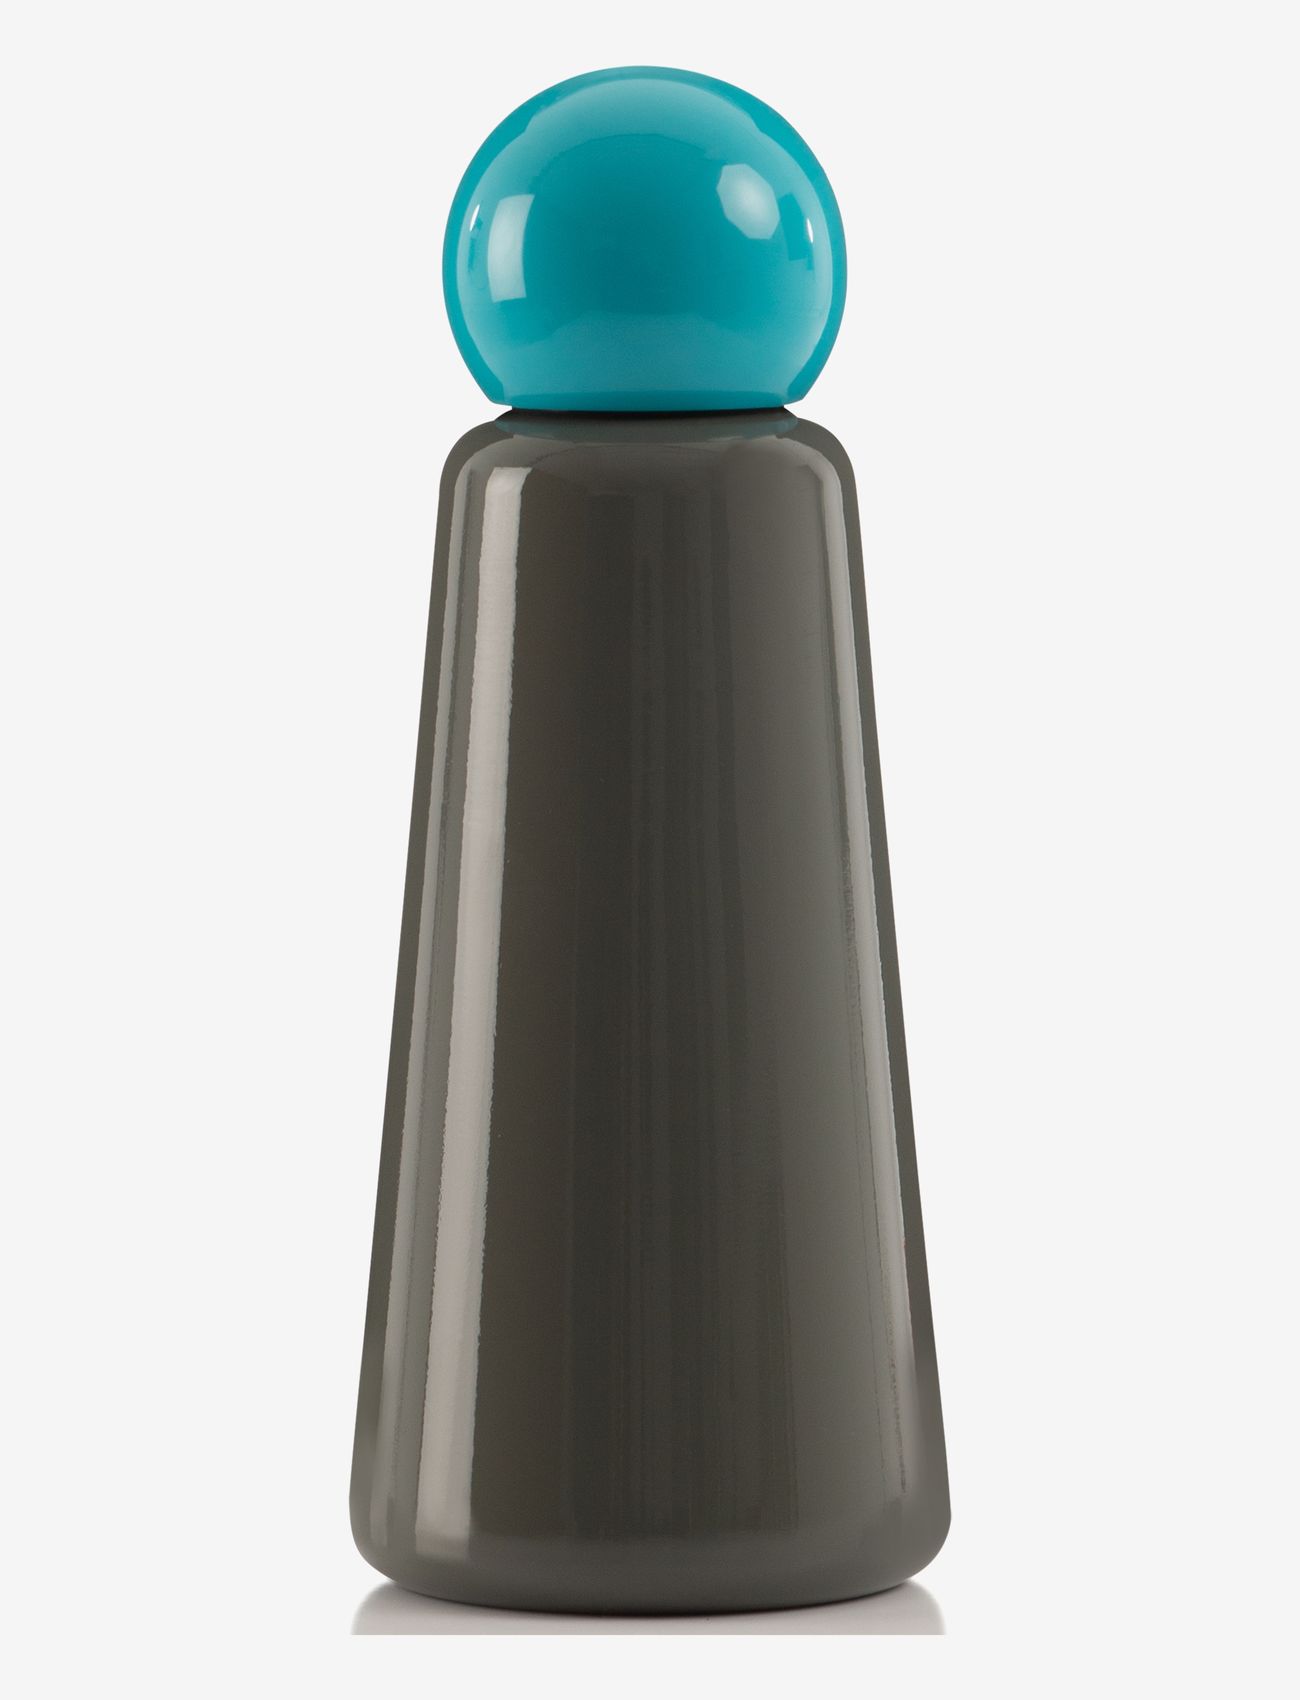 Lund London - Skittle Bottle Original - 500 ml - lowest prices - dark grey & sky blue - 0